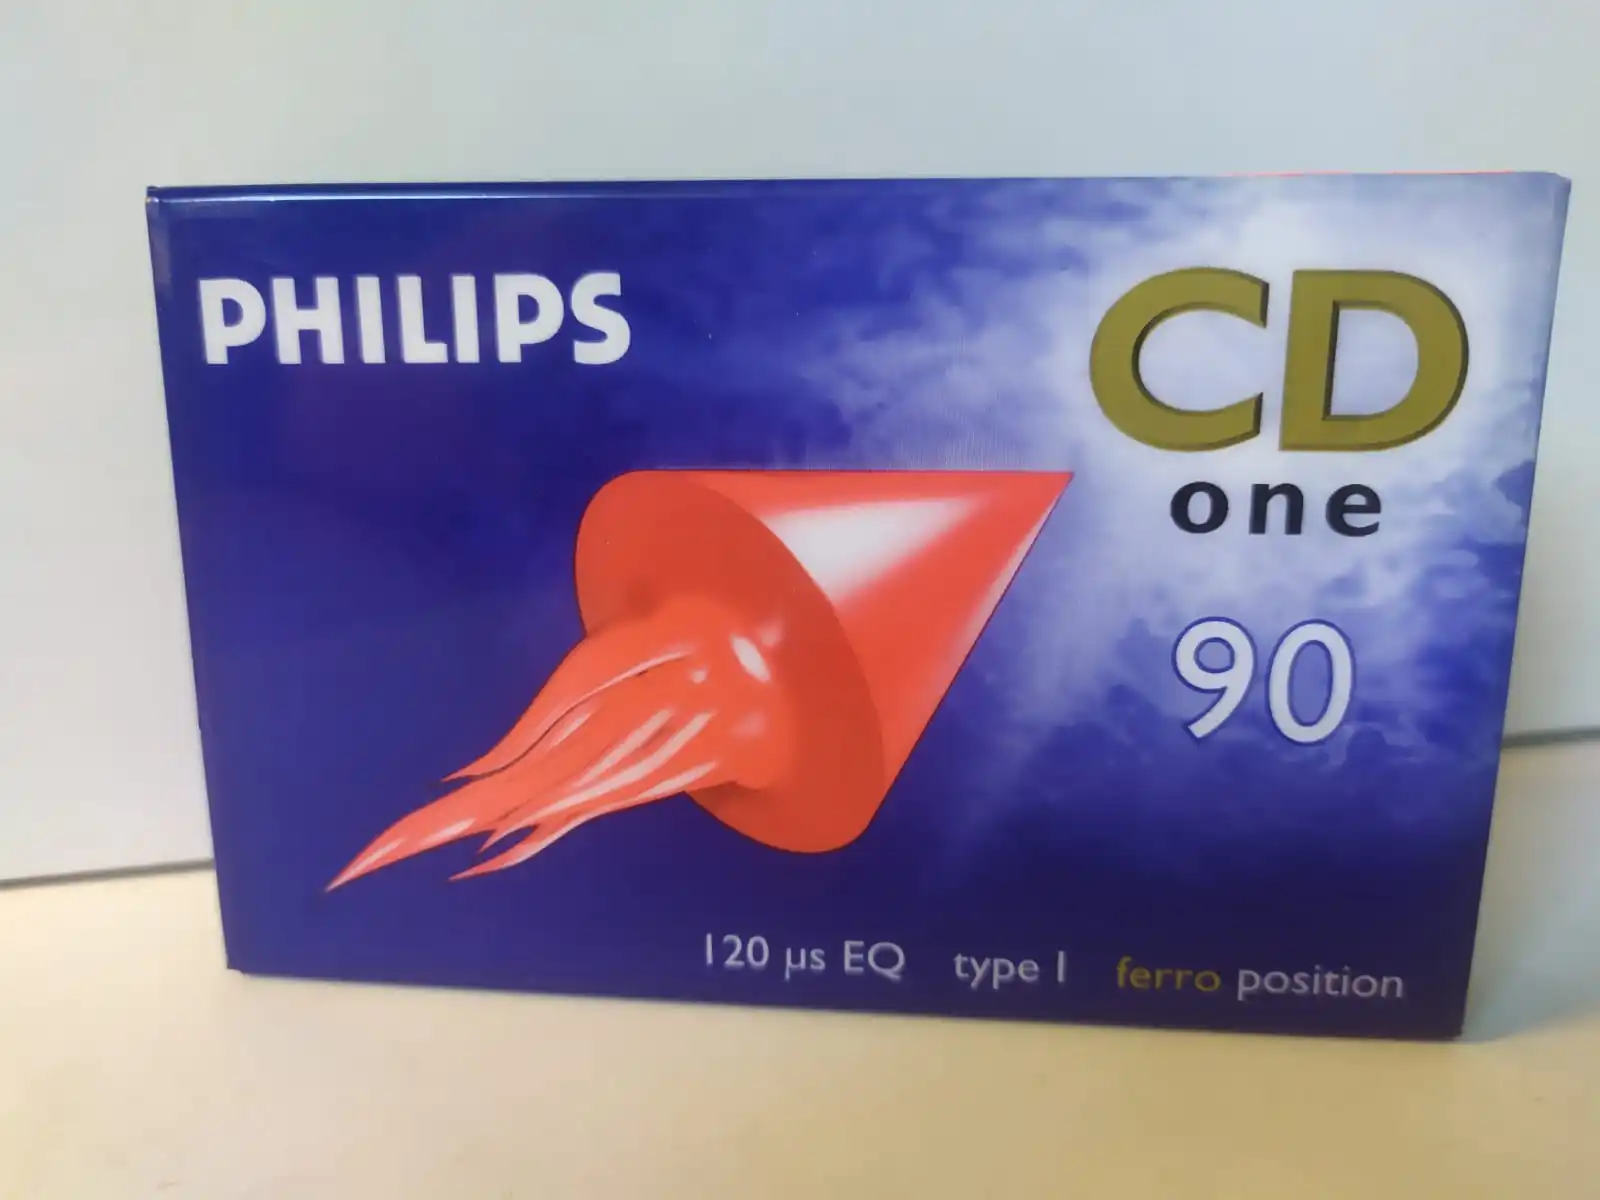 Кассеты филипс. Аудиокассета Philips CD one 90. Аудиокассеты Philips Ferro c 60 - normal. Вкладыш кассеты Филипс. Вкладыши Cassette Philips c - 90.